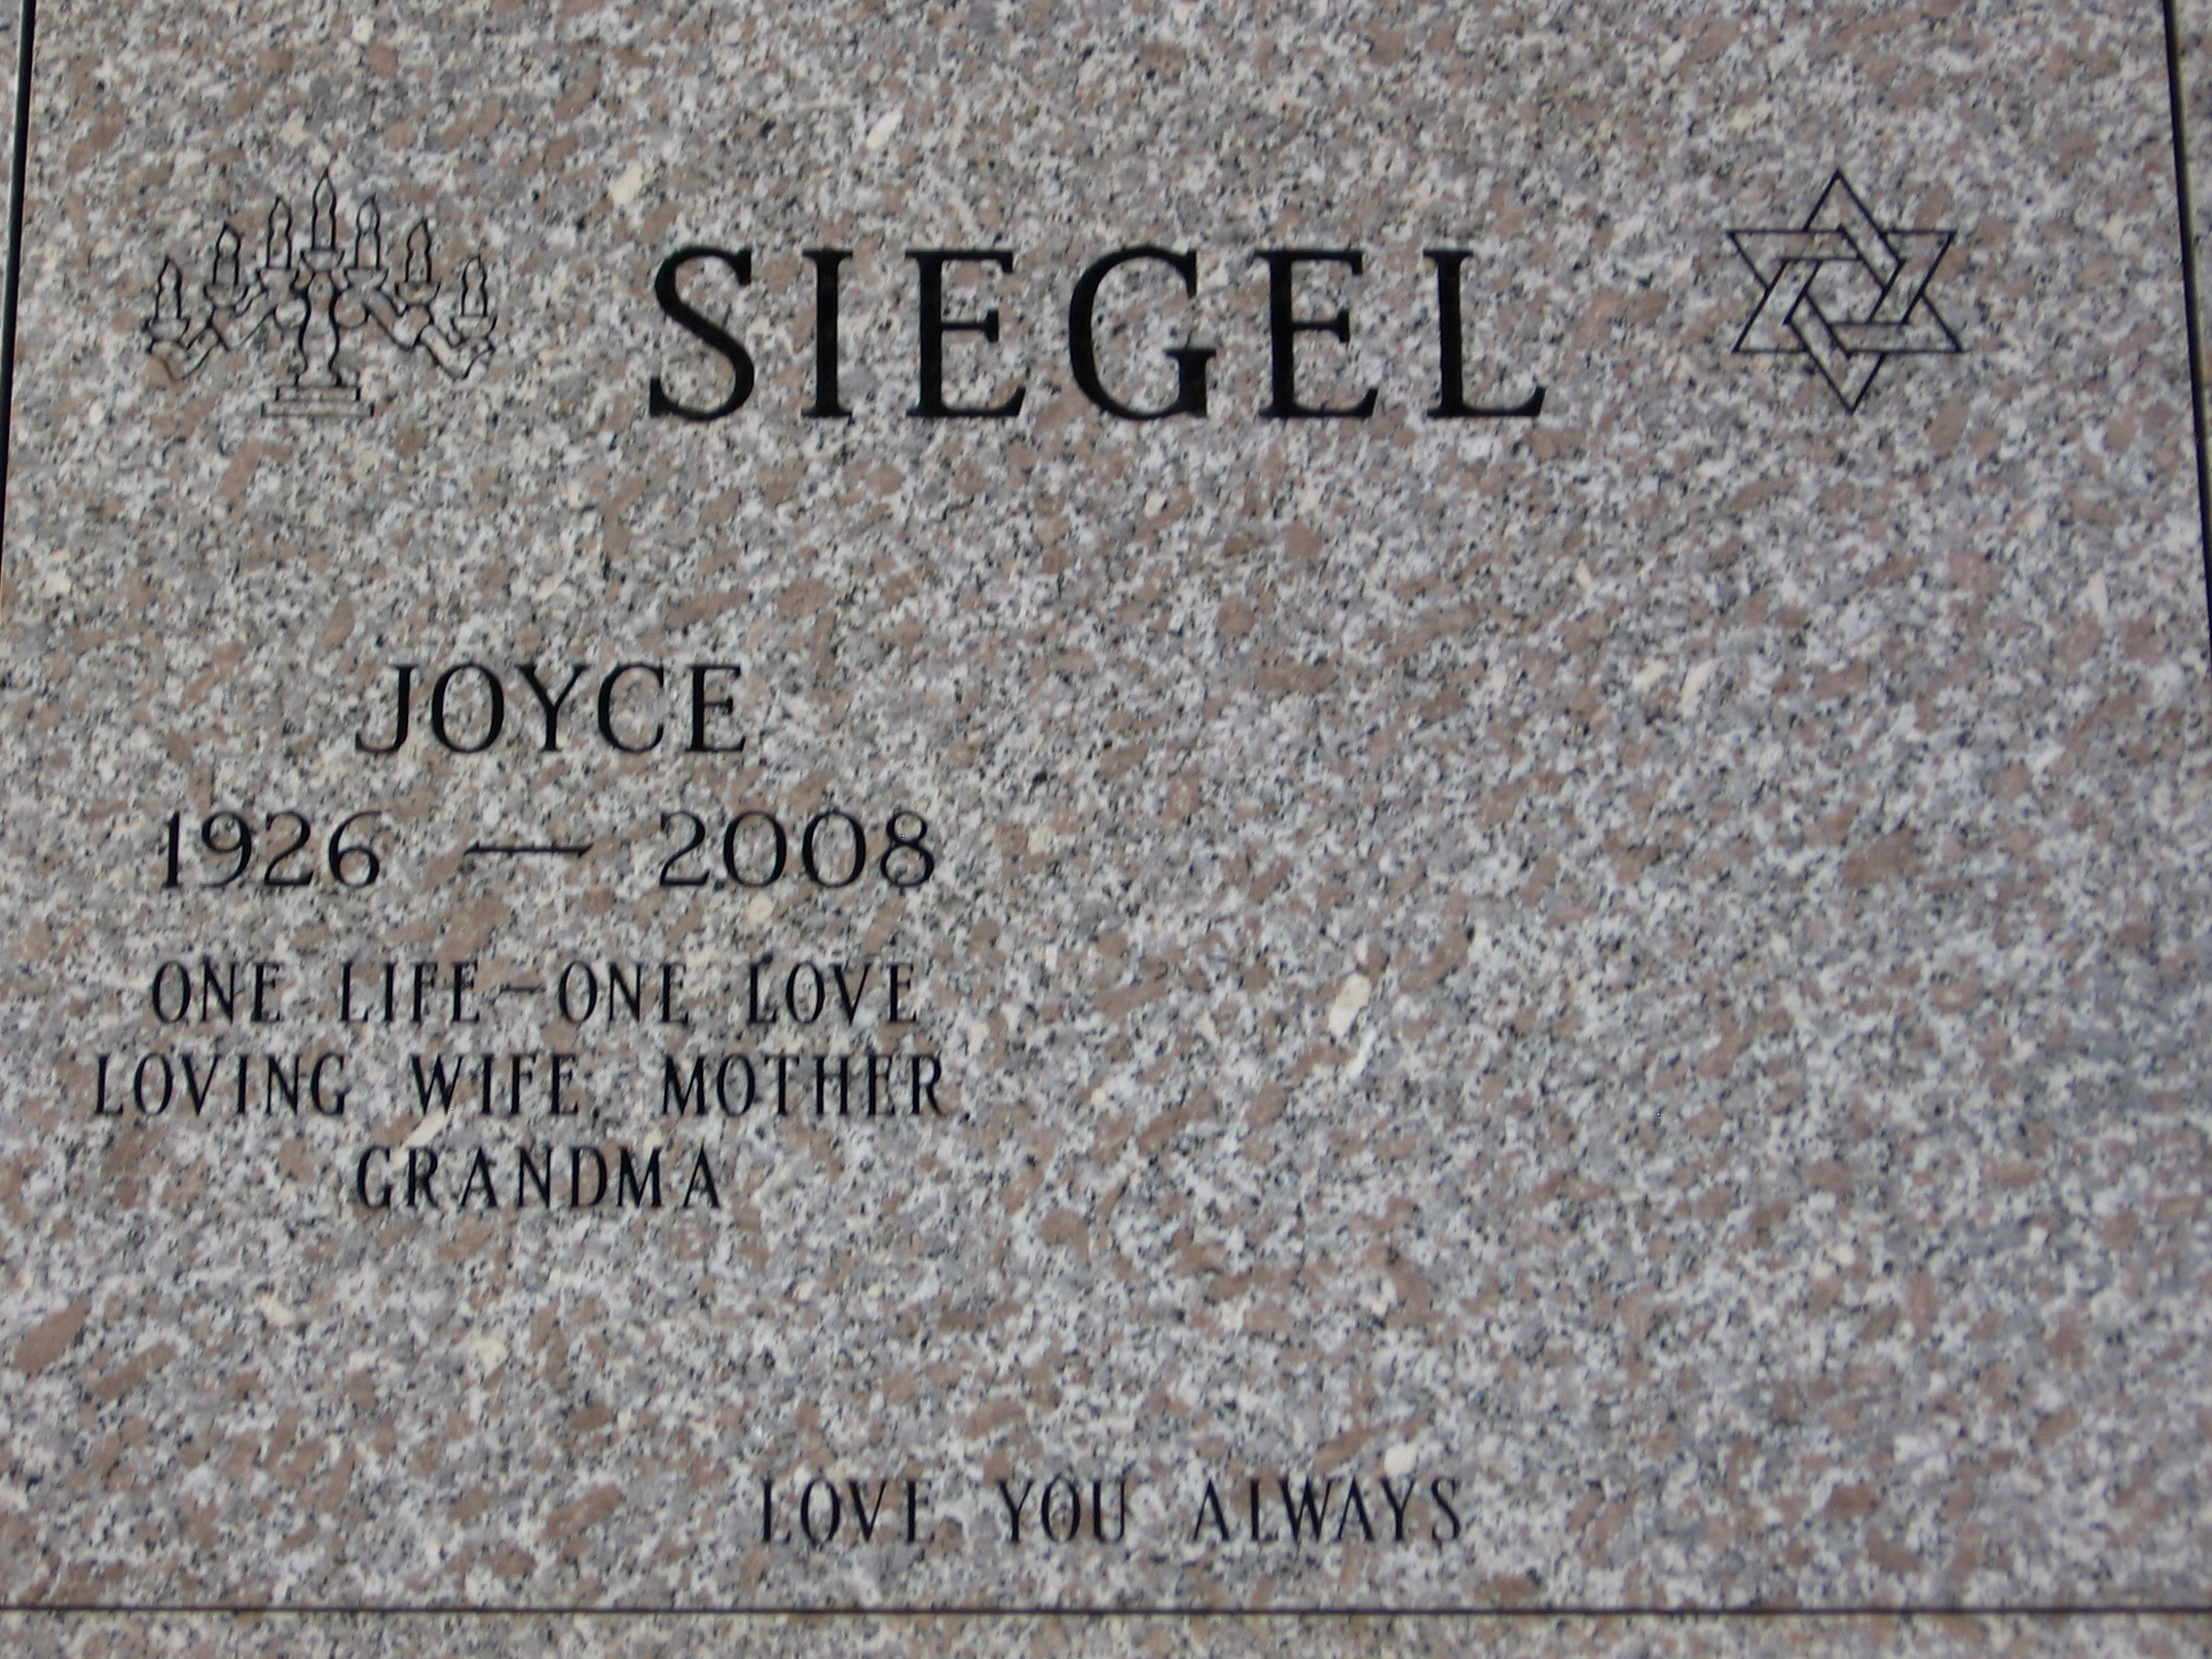 Joyce Siegel